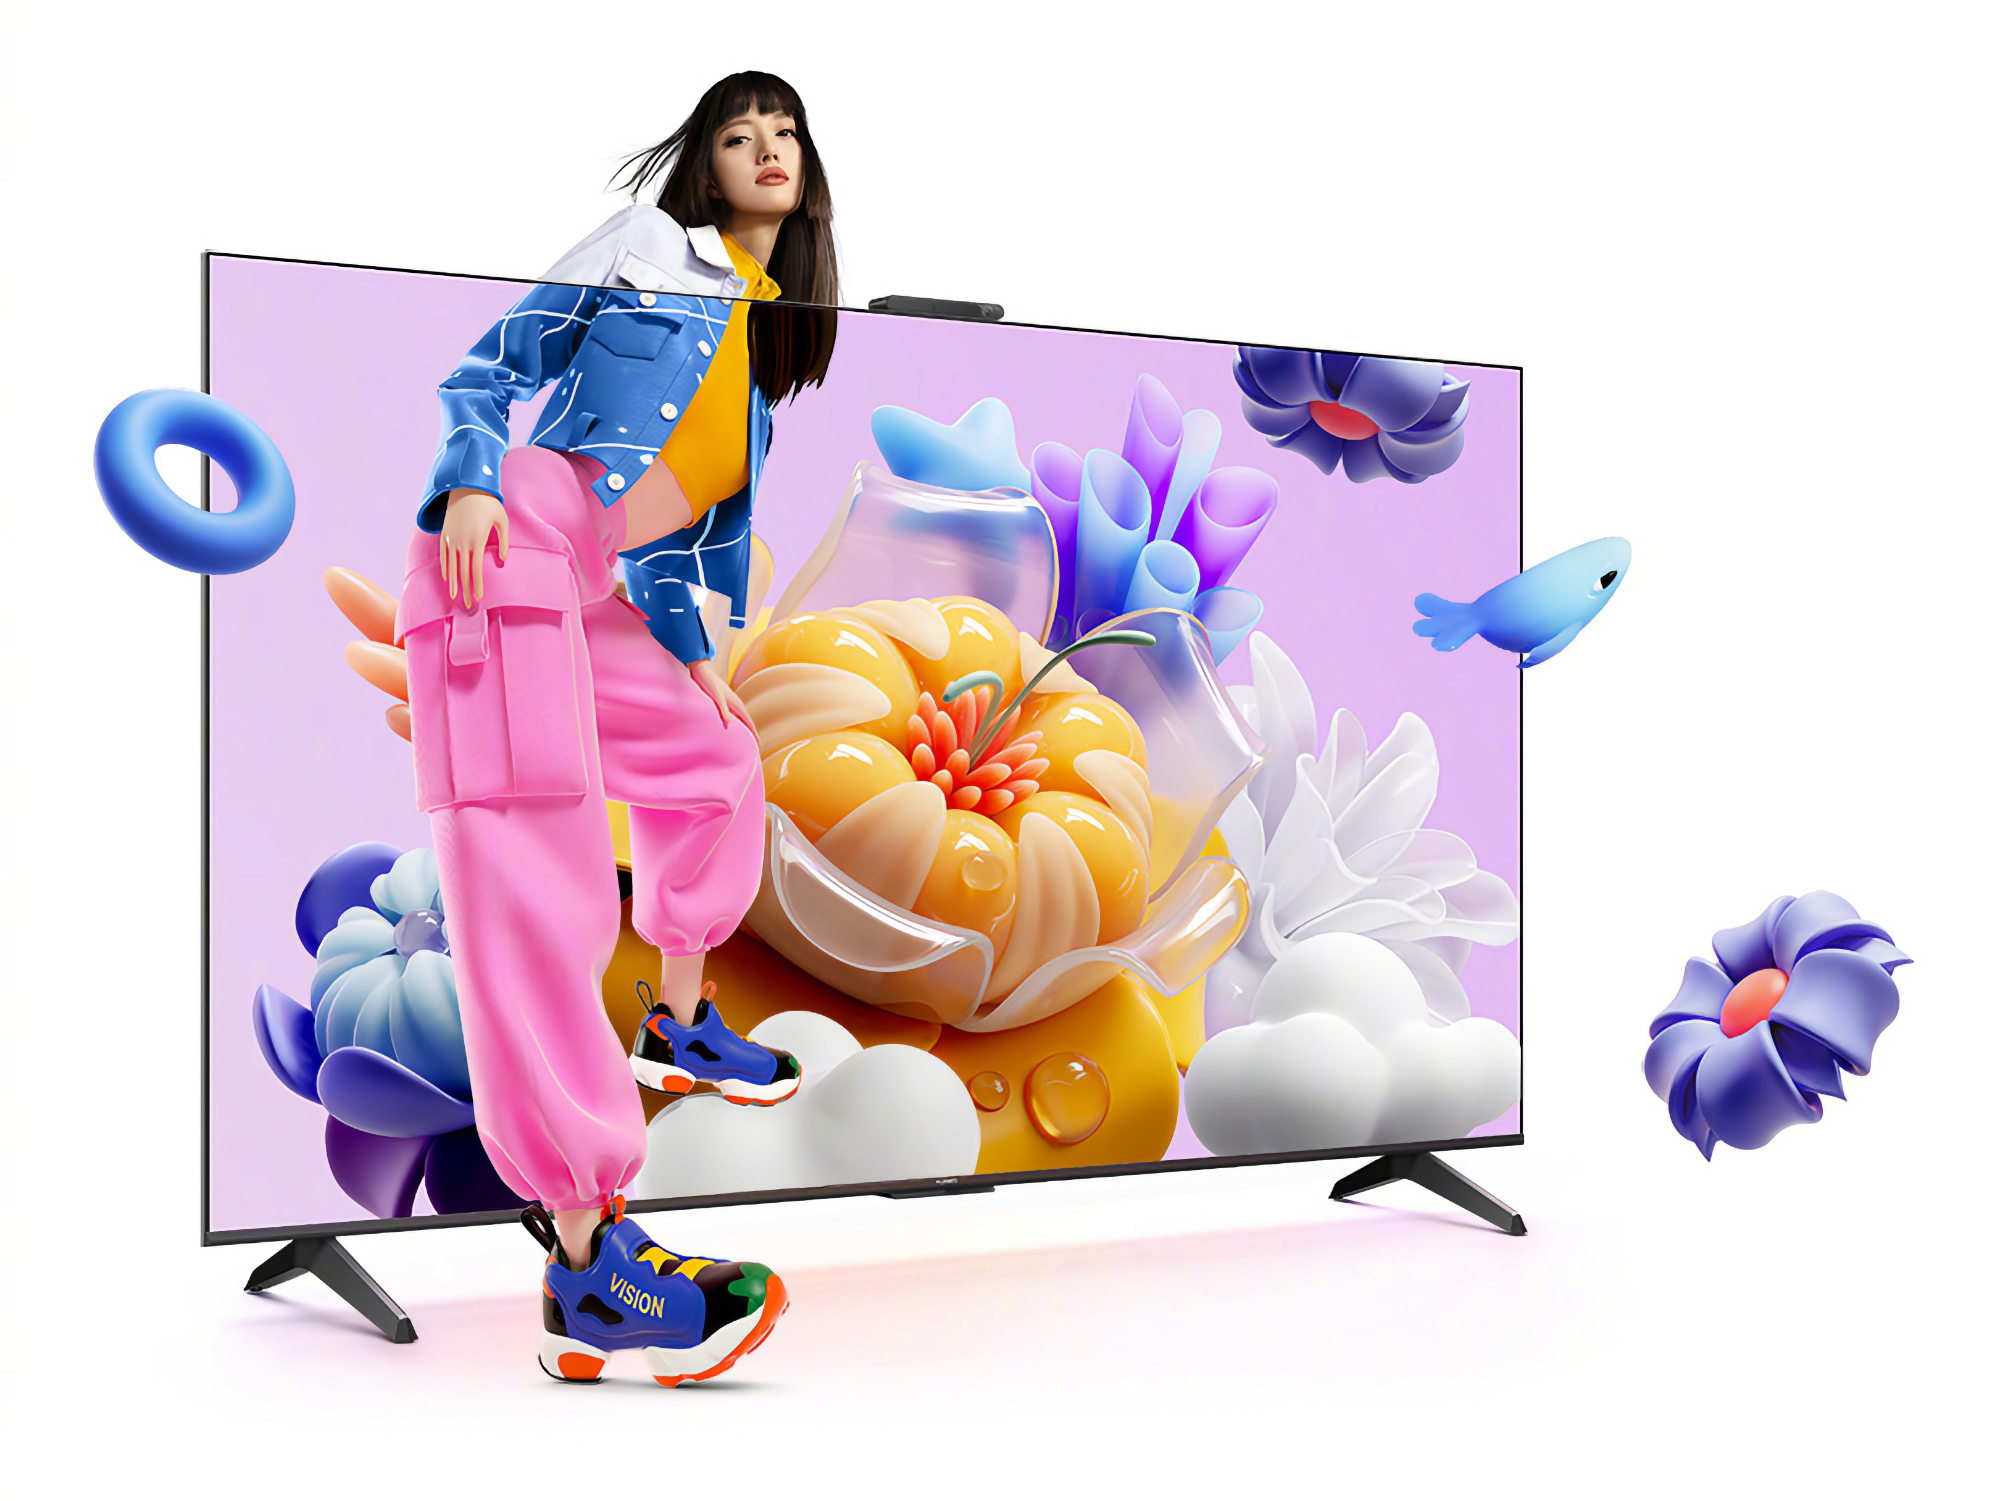 Huawei Vision Smart TV SE3: en række smart-tv med 4K-skærme ved 120Hz og HarmonyOS ombord til en pris fra $340